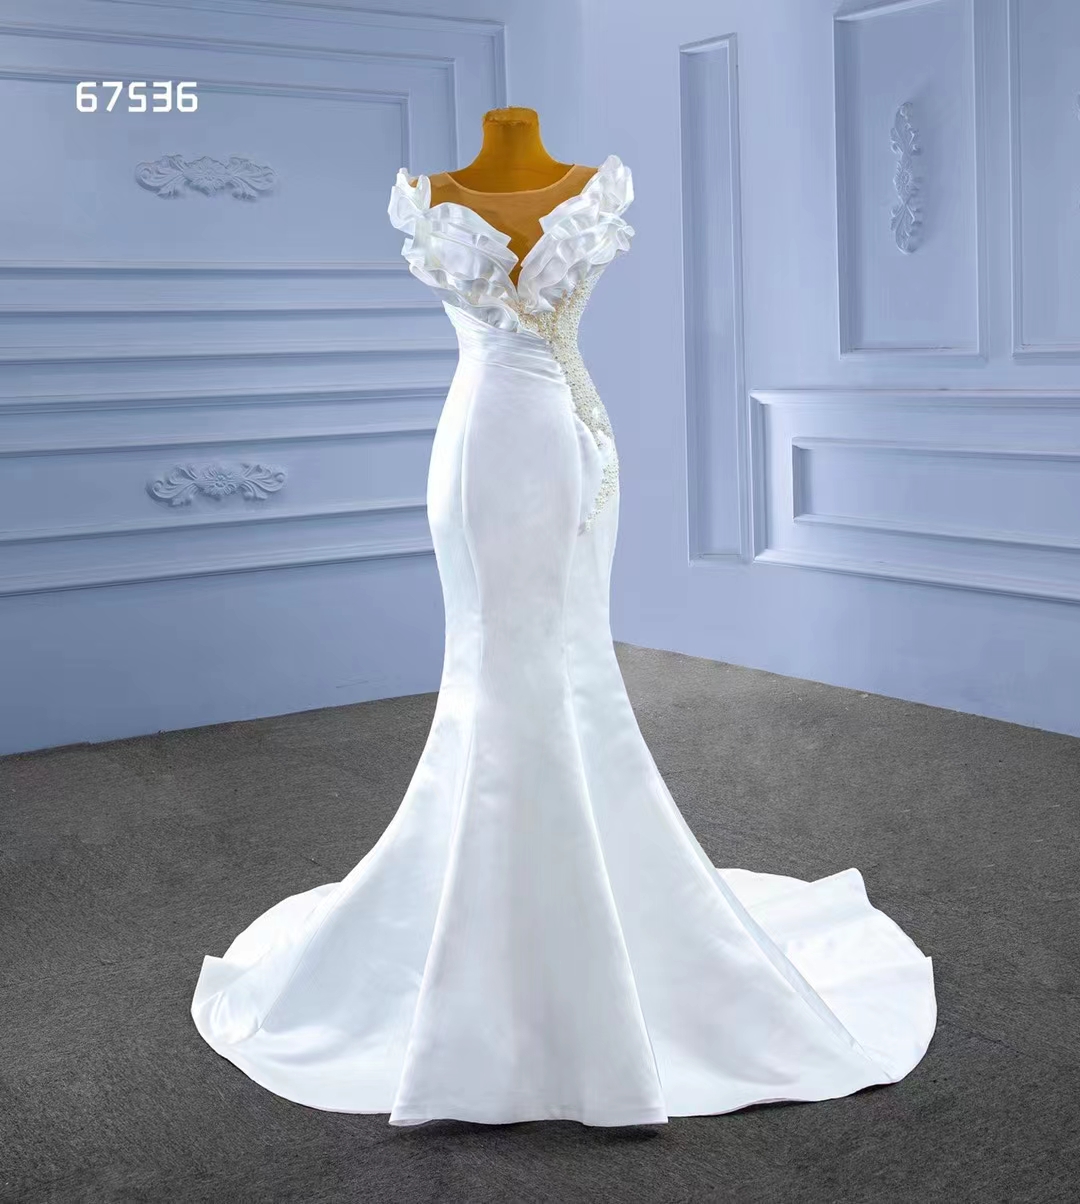 Sexig mjuk satin vit bröllop sjöjungfru klänning trend design partiell pärla SM67536